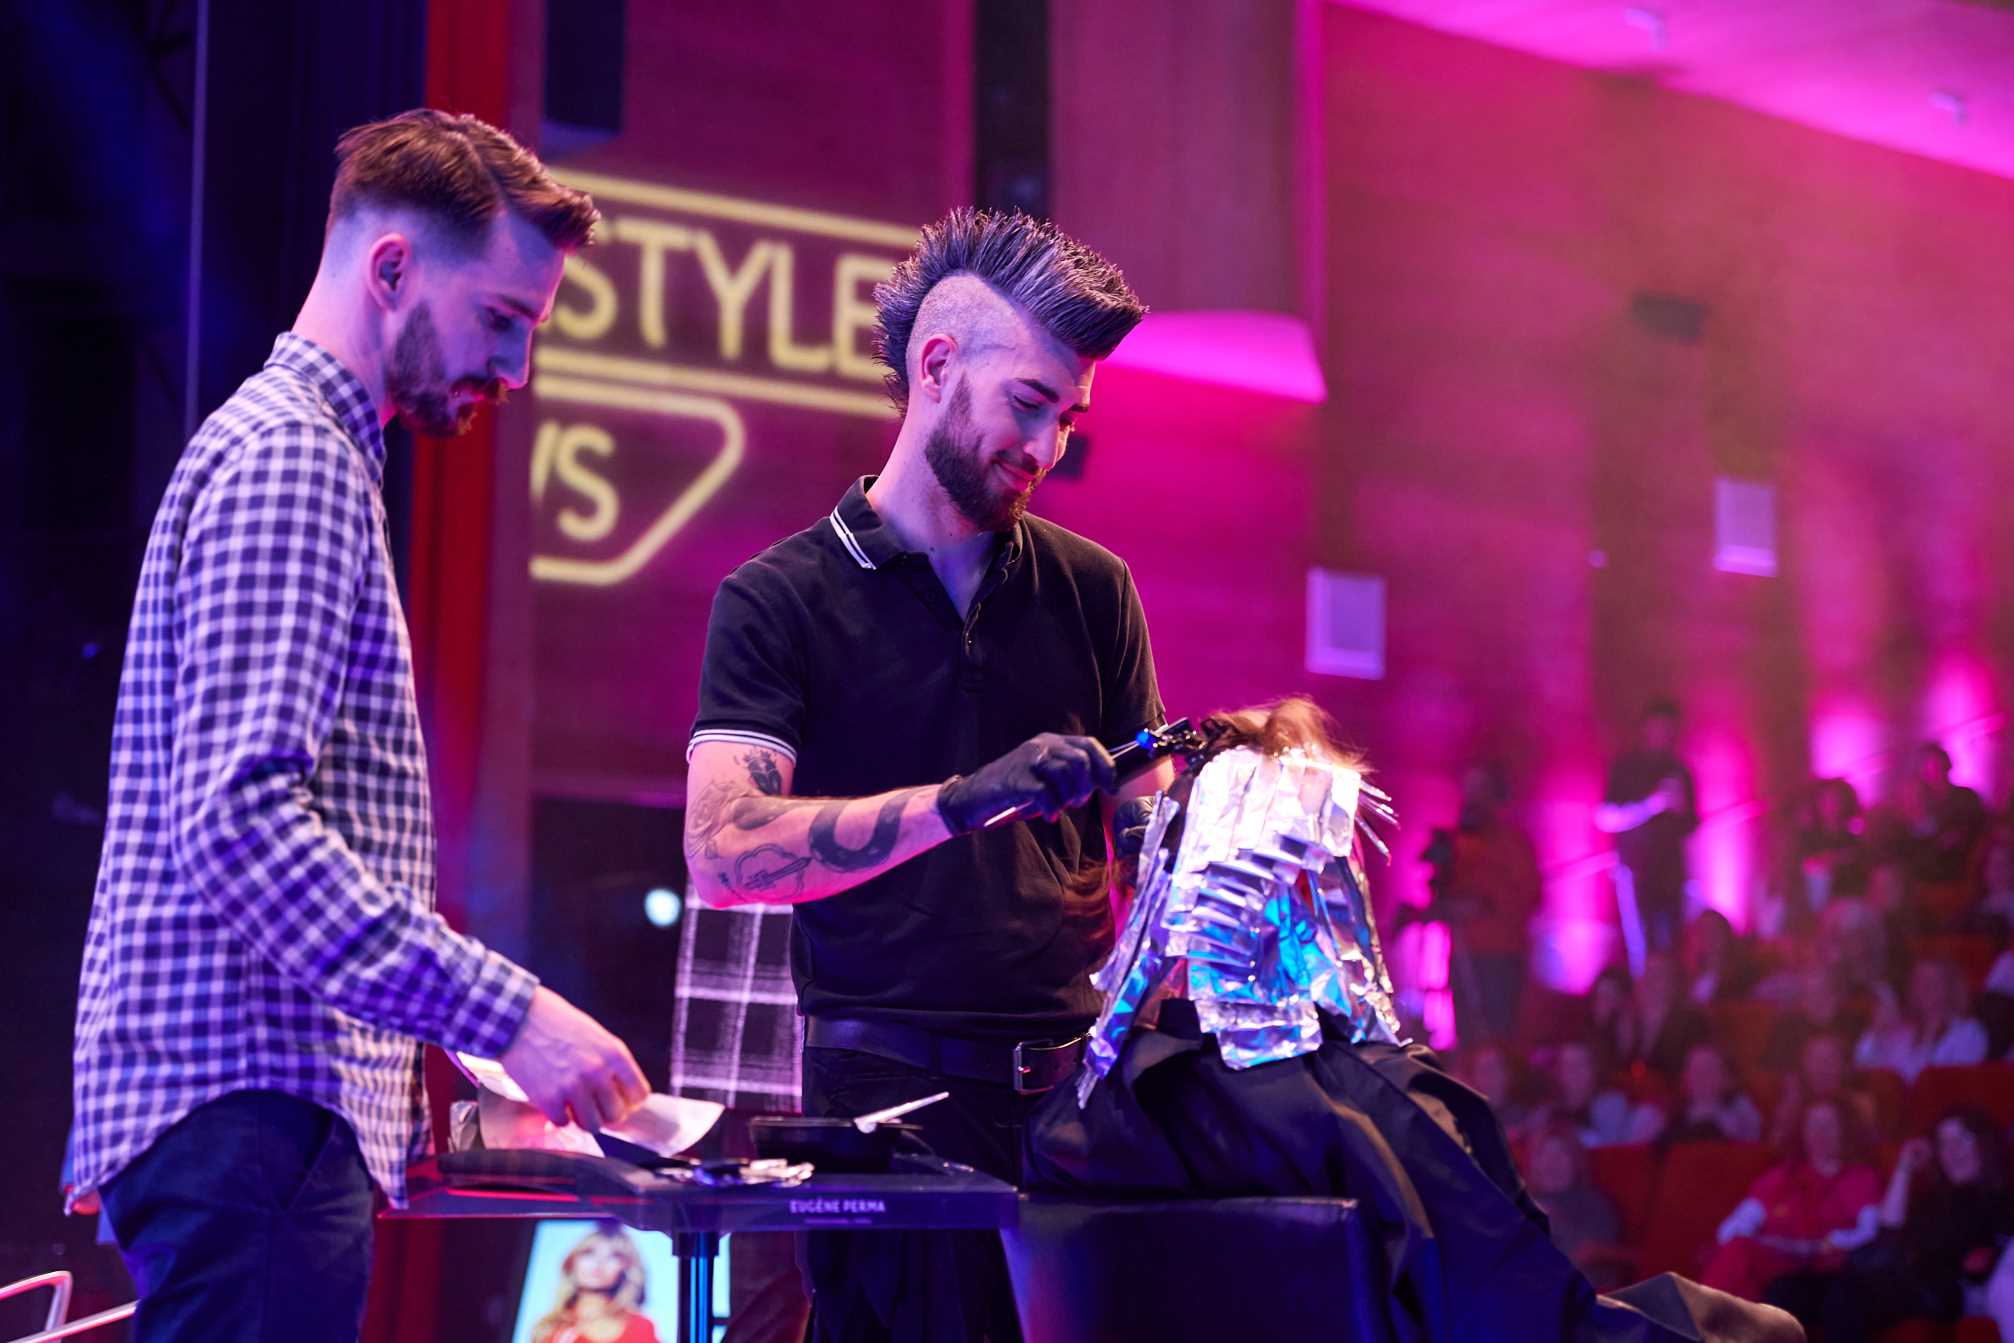 Hairstyle News Festival predstavlja najnovije frizerske trendove i inovacije